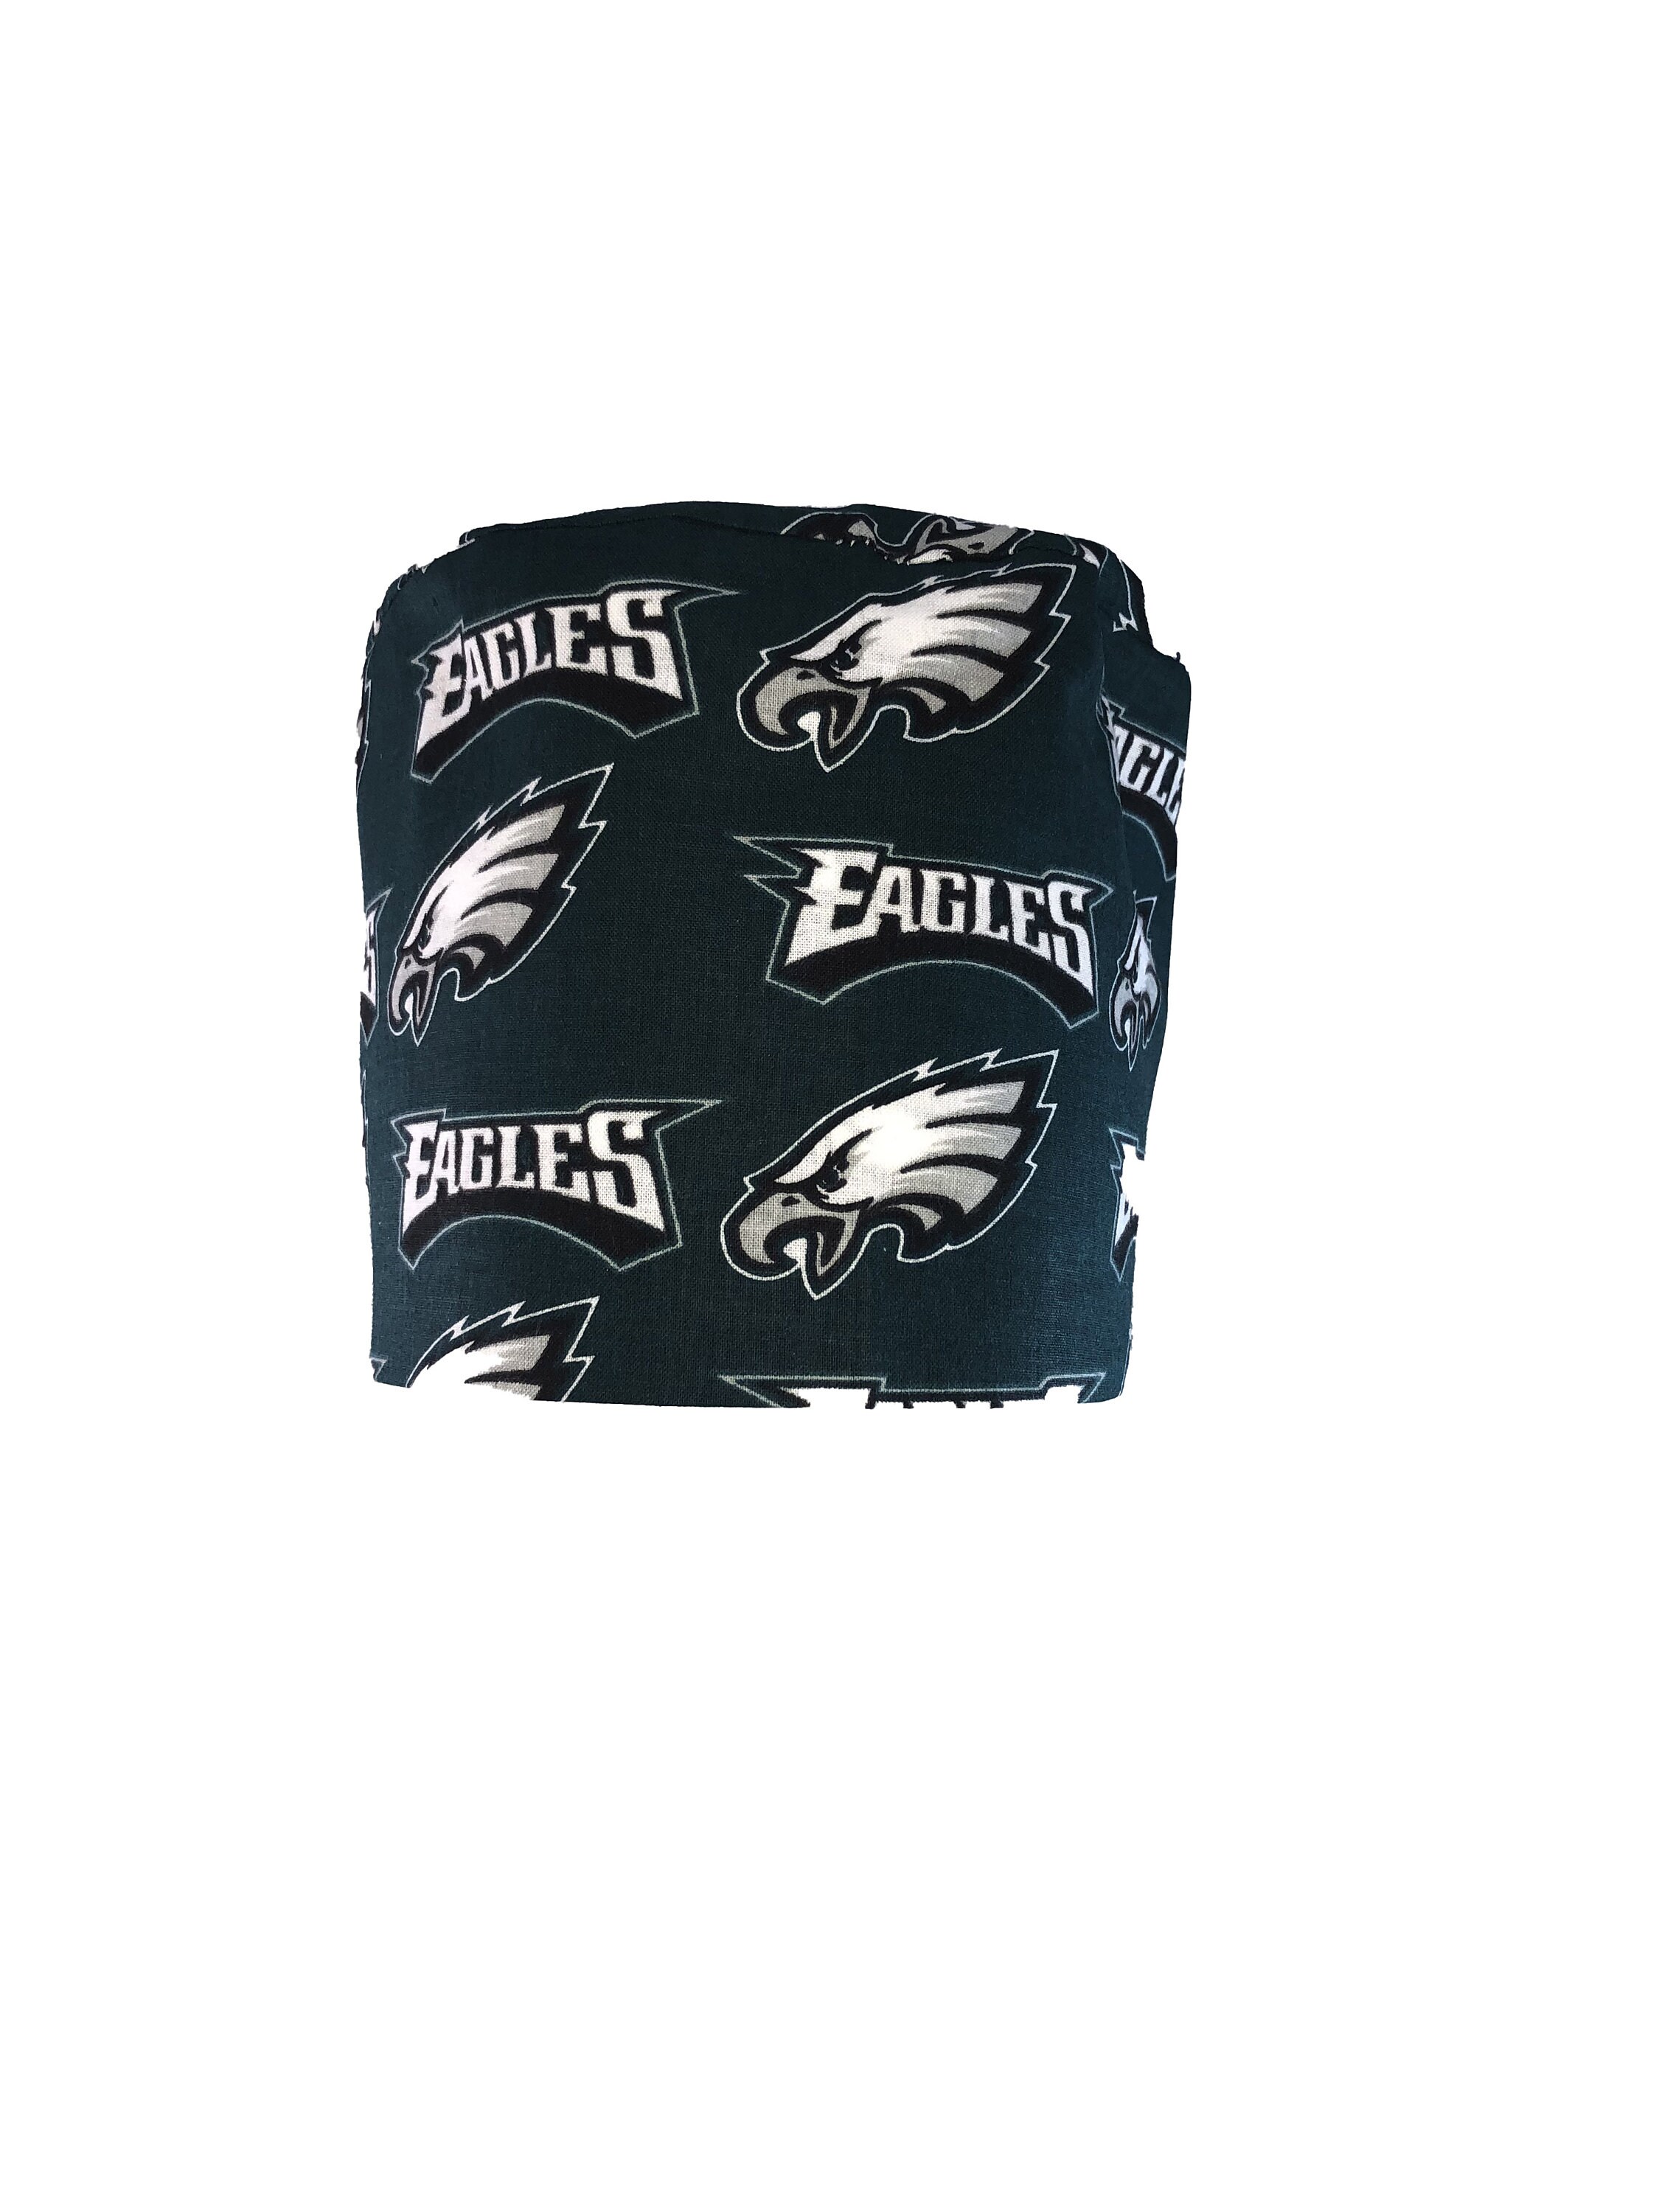 With or Without Ponytail Holder. Philadelphia Eagles Large Print  NFL Tie Back Scrub Cap Accessoires Hoeden & petten Operatiekapjes Nurse Hat Surgical Cap 